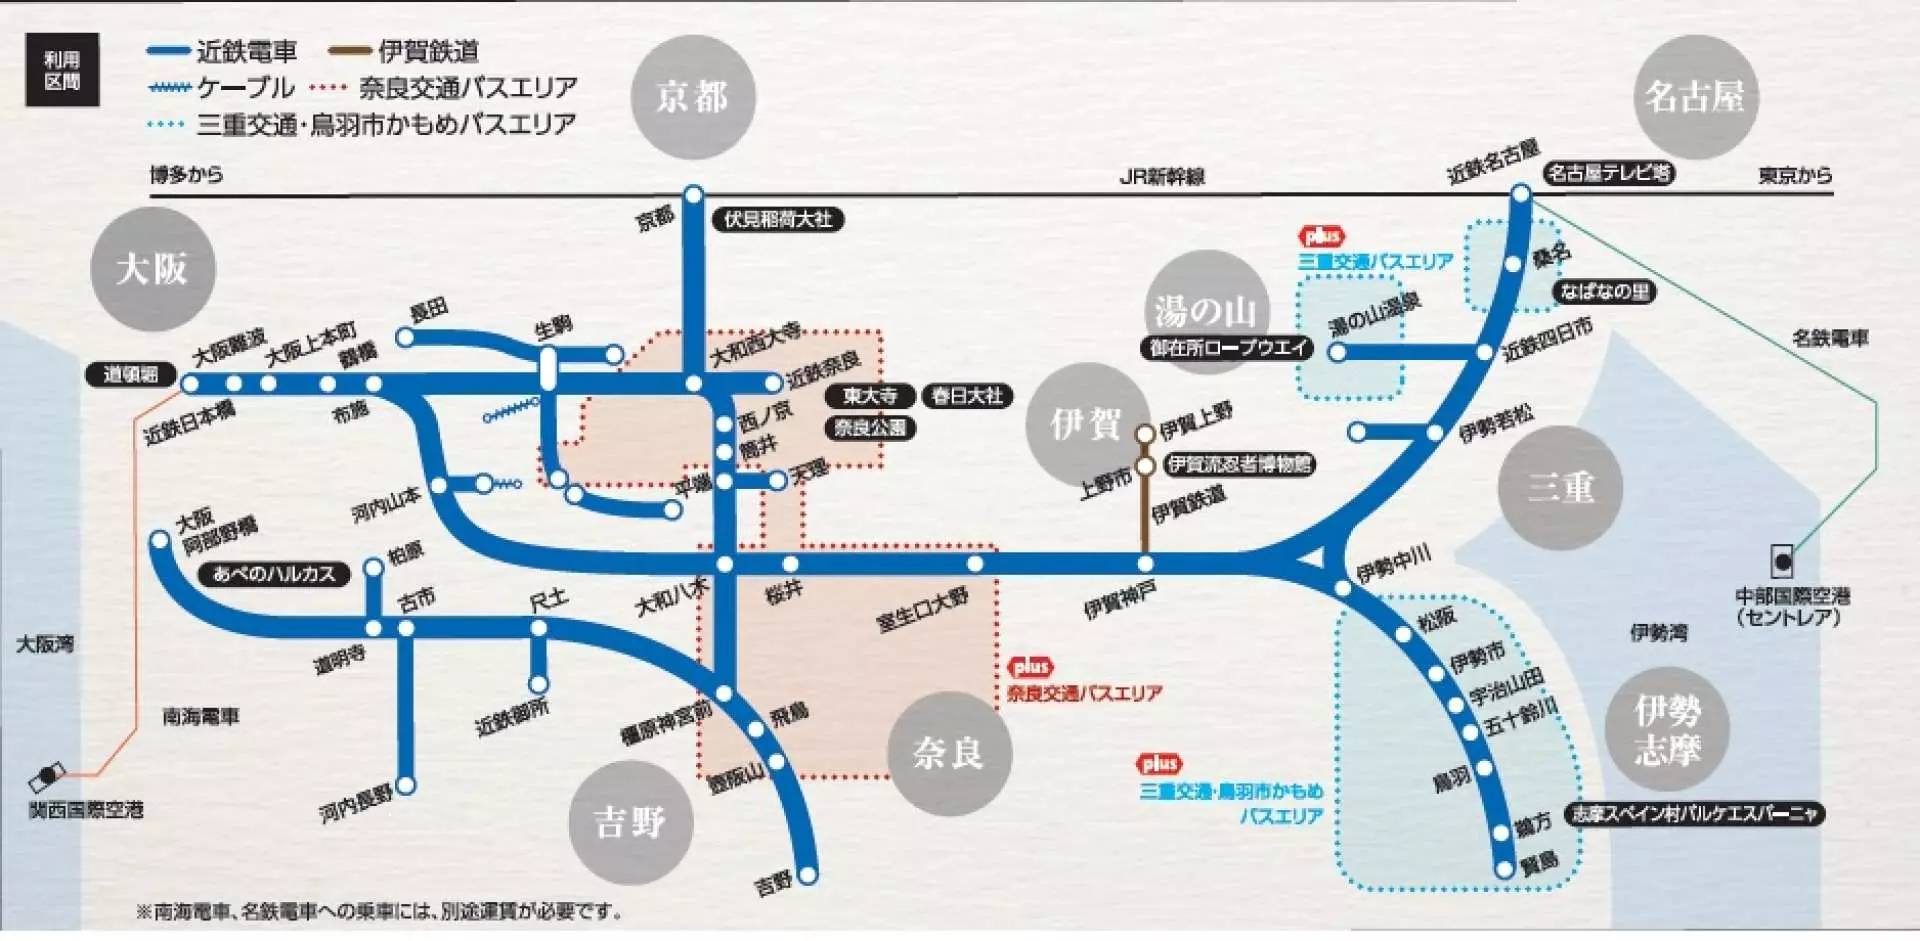 【關西交通票券】 KINTETSU RAIL PASS 近鐵電車周遊 1 / 2 / 5 日券一般版 / 5 日券 PLUS 版